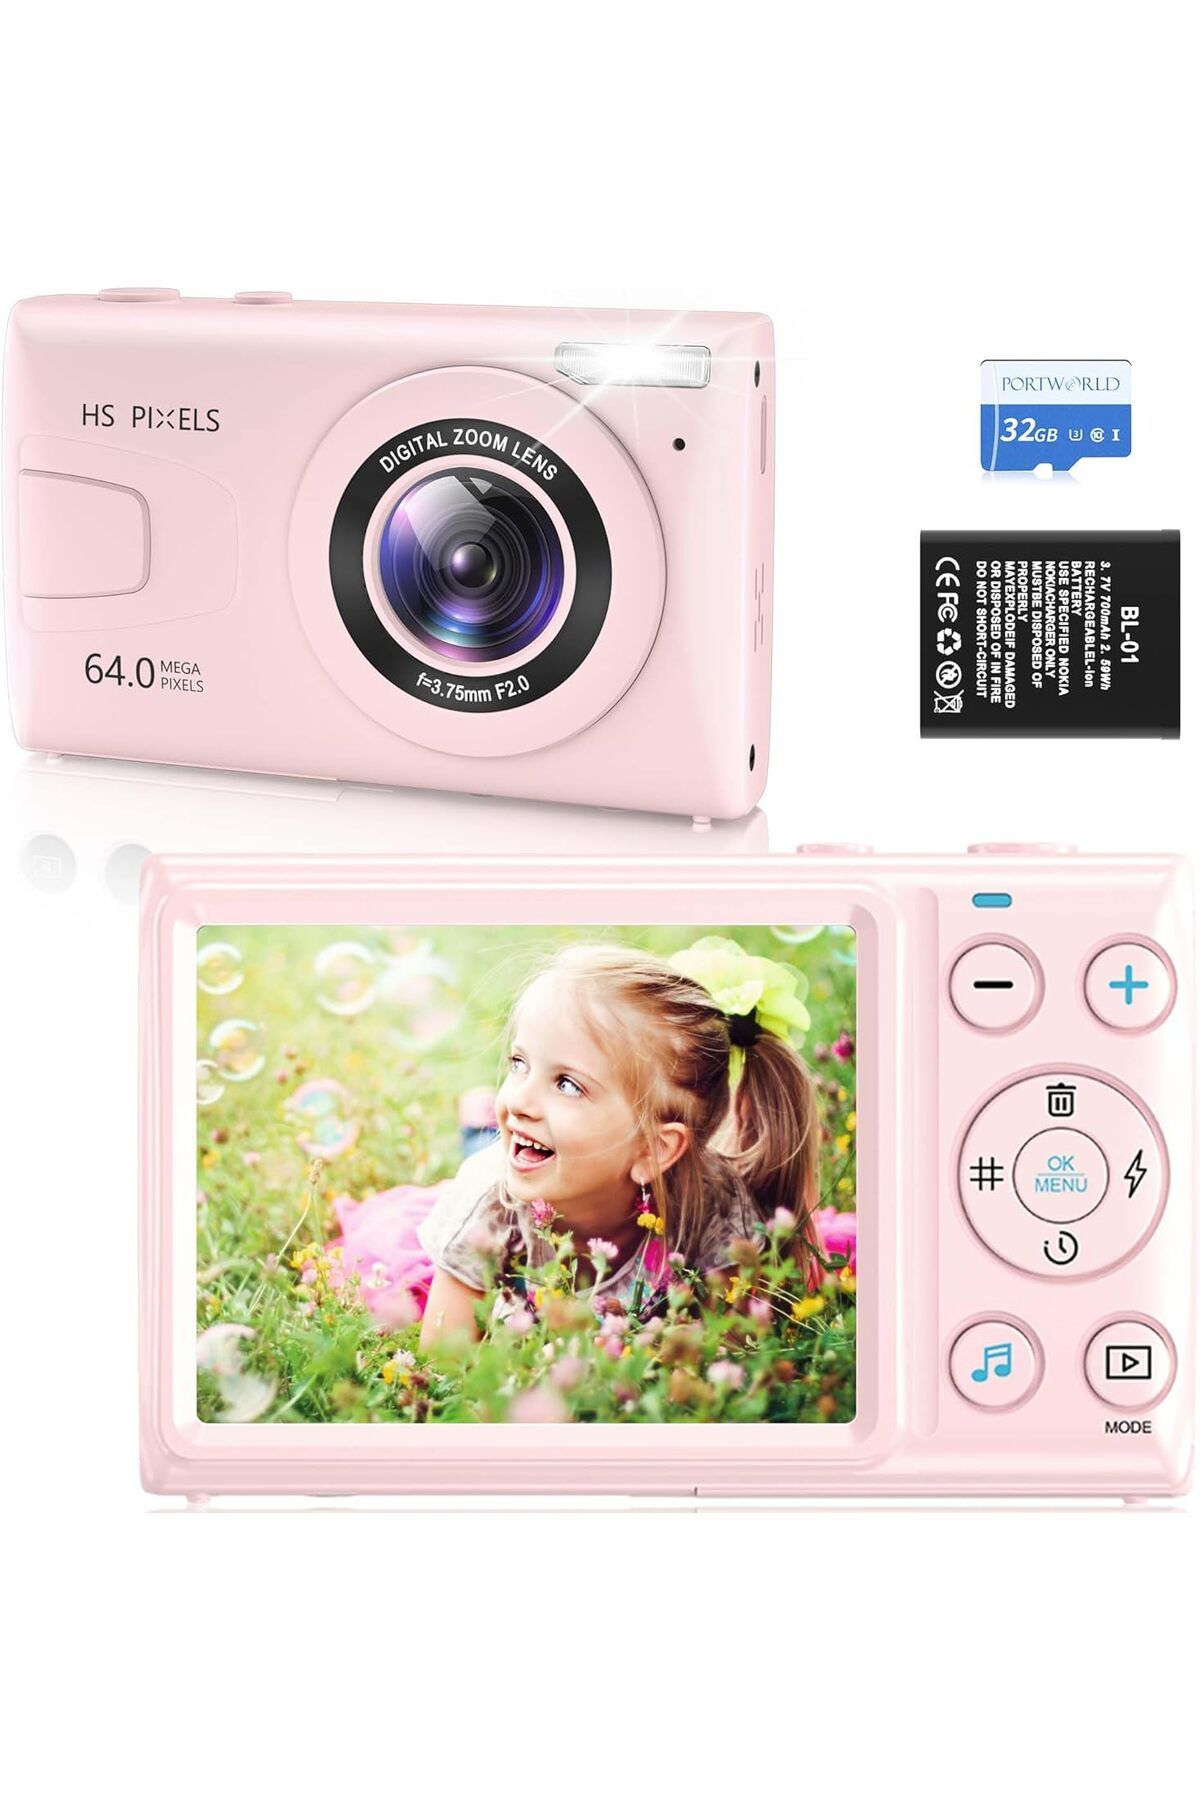 PORTWORLD Çocuklar İçin 4K Kompakt Dijital Kamera Otomatik Odaklama Özellikli 32GB, 64MP Kamera ve 18X Zoom,